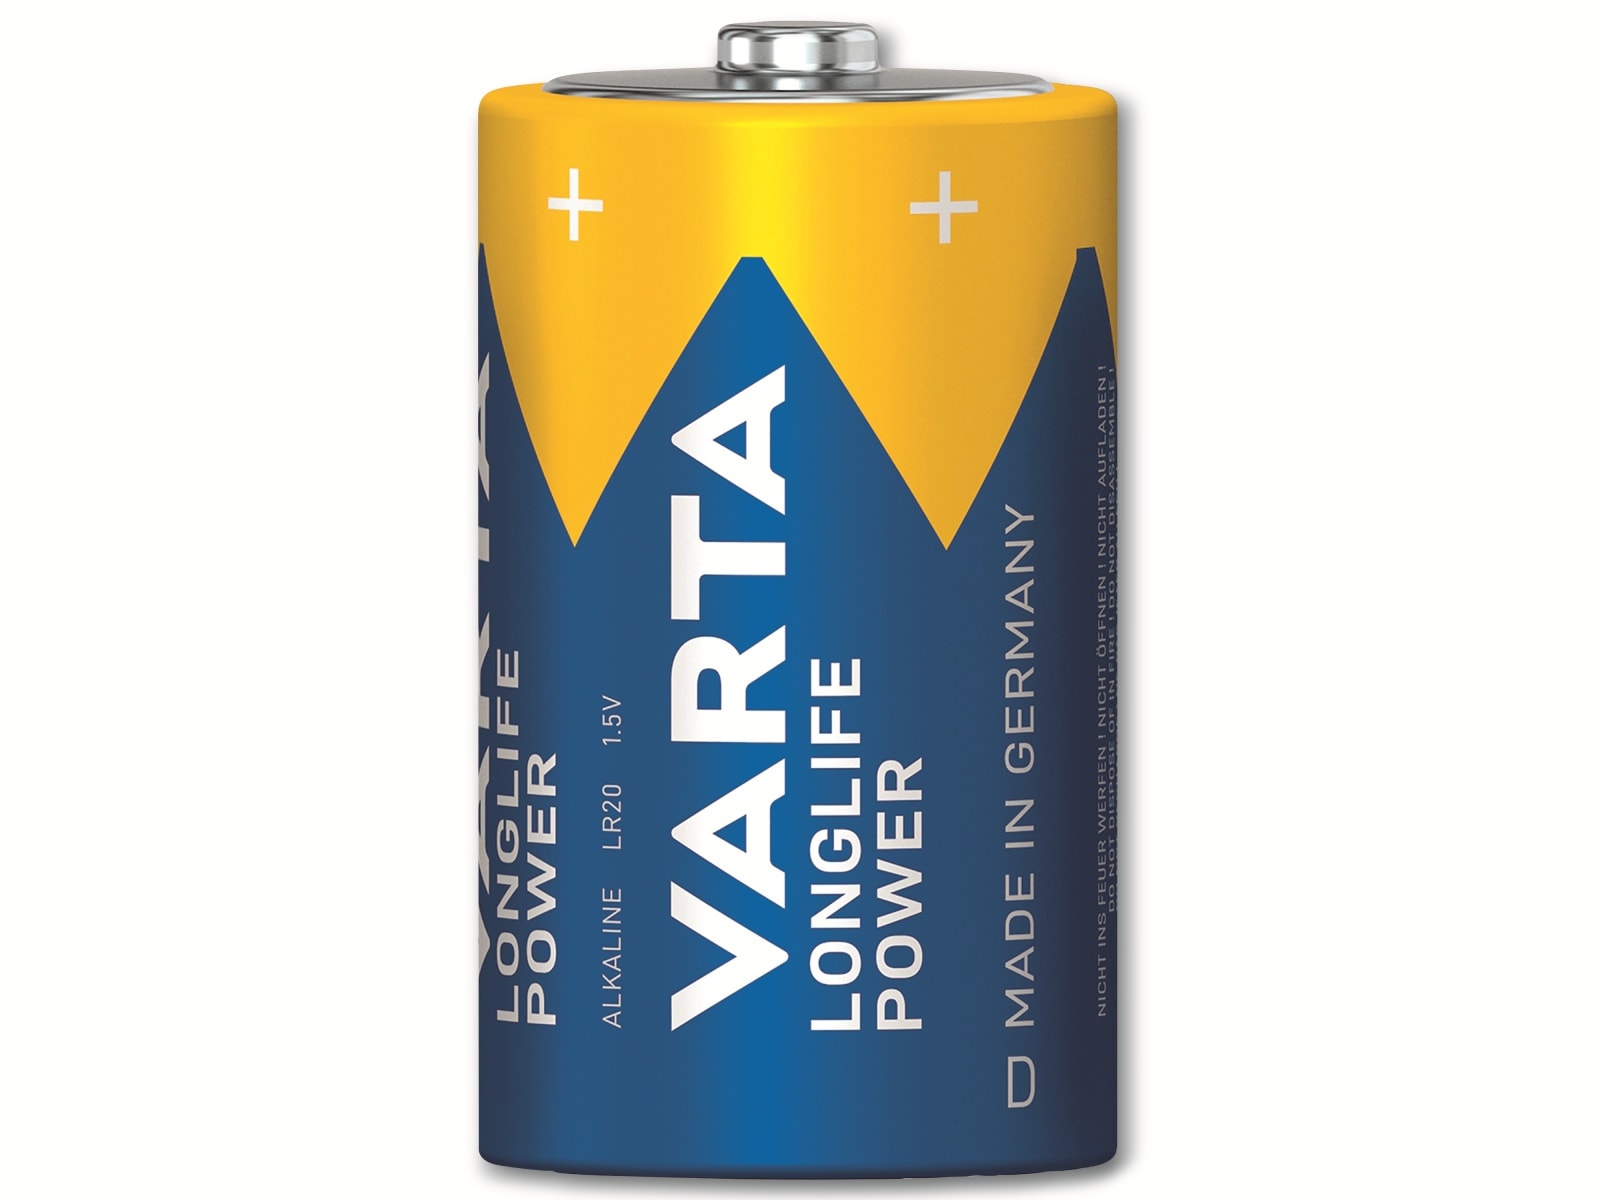 VARTA Batterie Alkaline, Mono, D, LR20, 1.5V, Longlife Power, 2 Stück